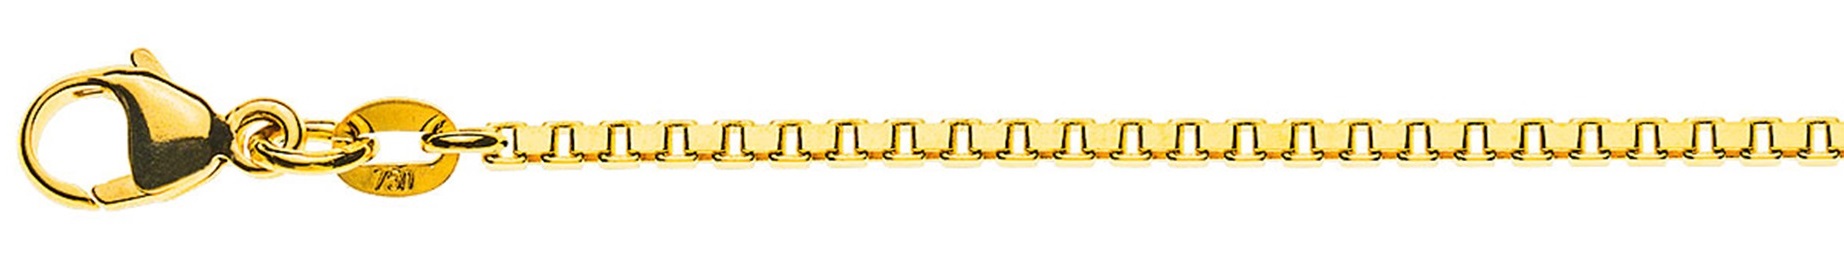 AURONOS Prestige Halskette Gelbgold 18K Venezianerkette diamantiert 60cm 1.6mm